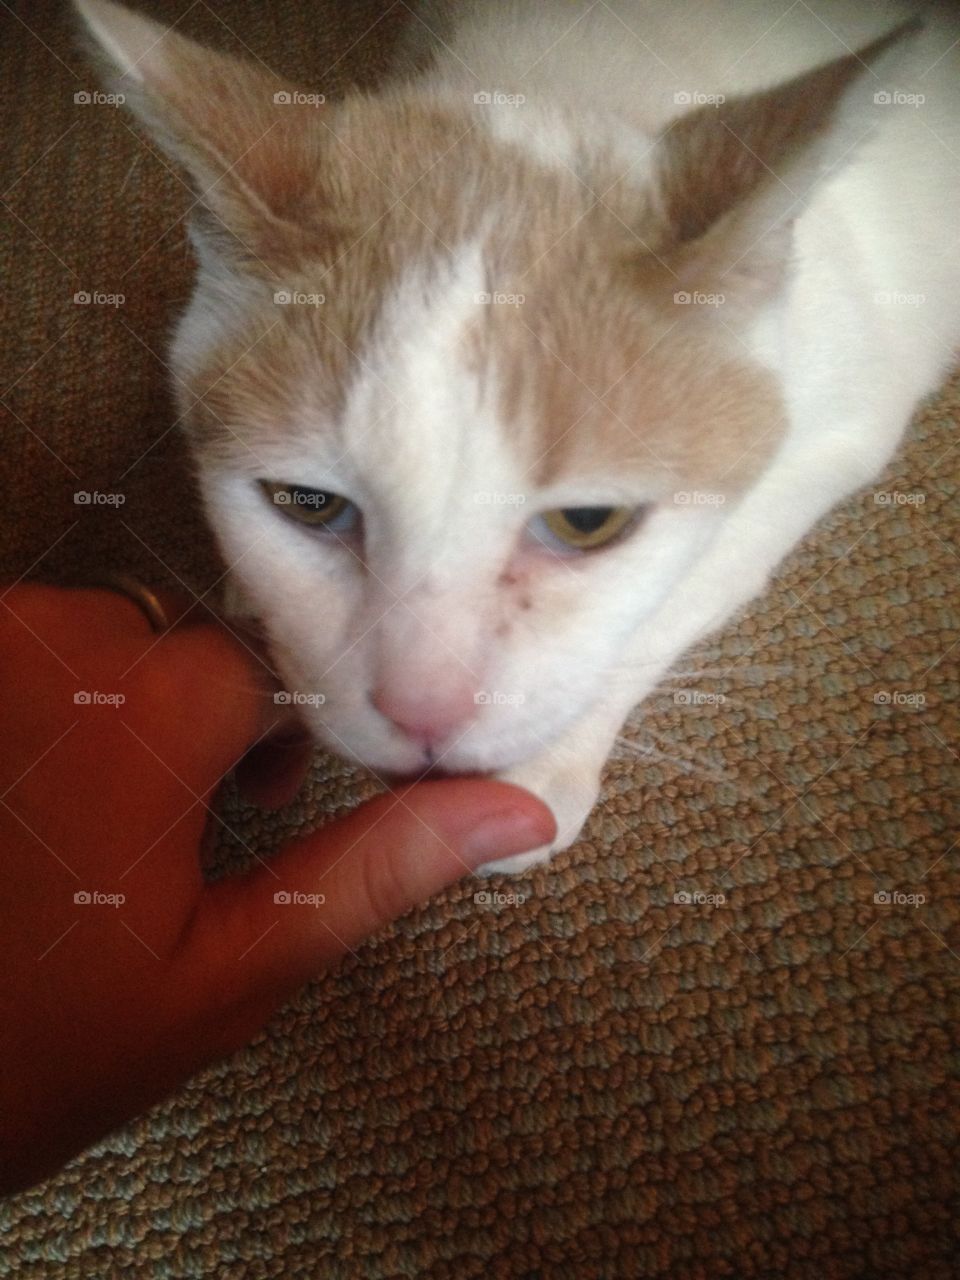 Kitten licking a hand 